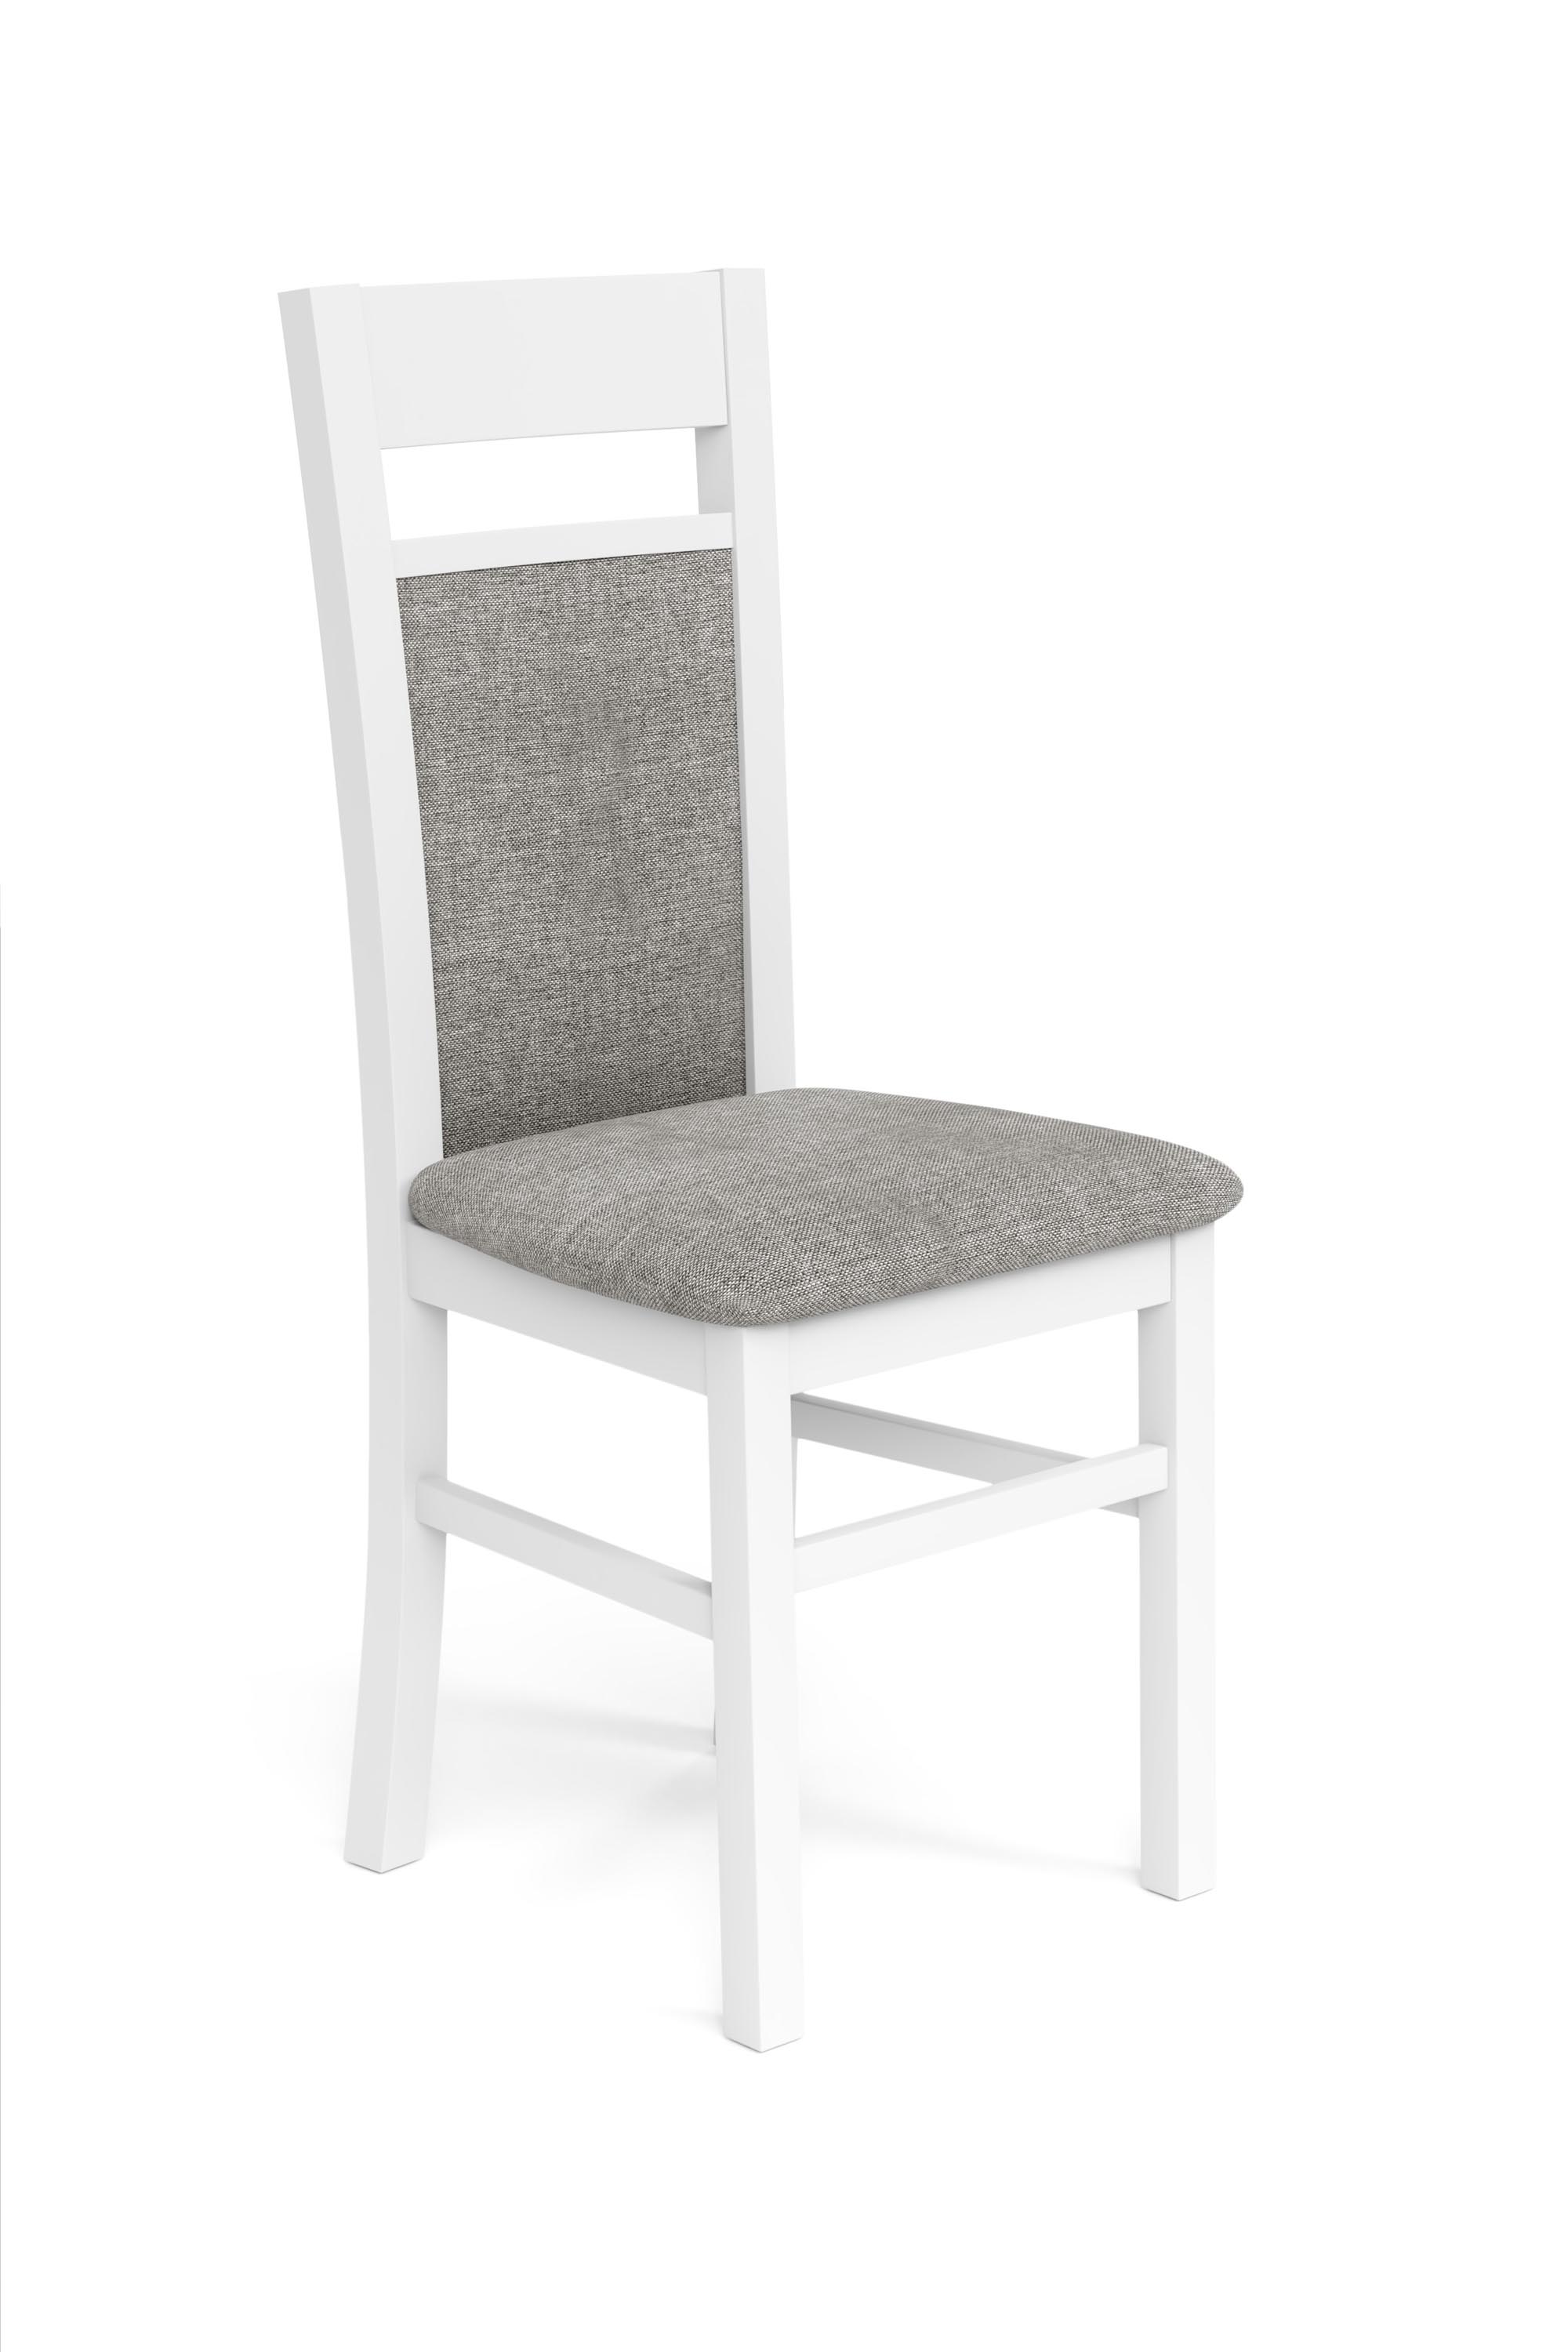 GERARD2 krzesło biały